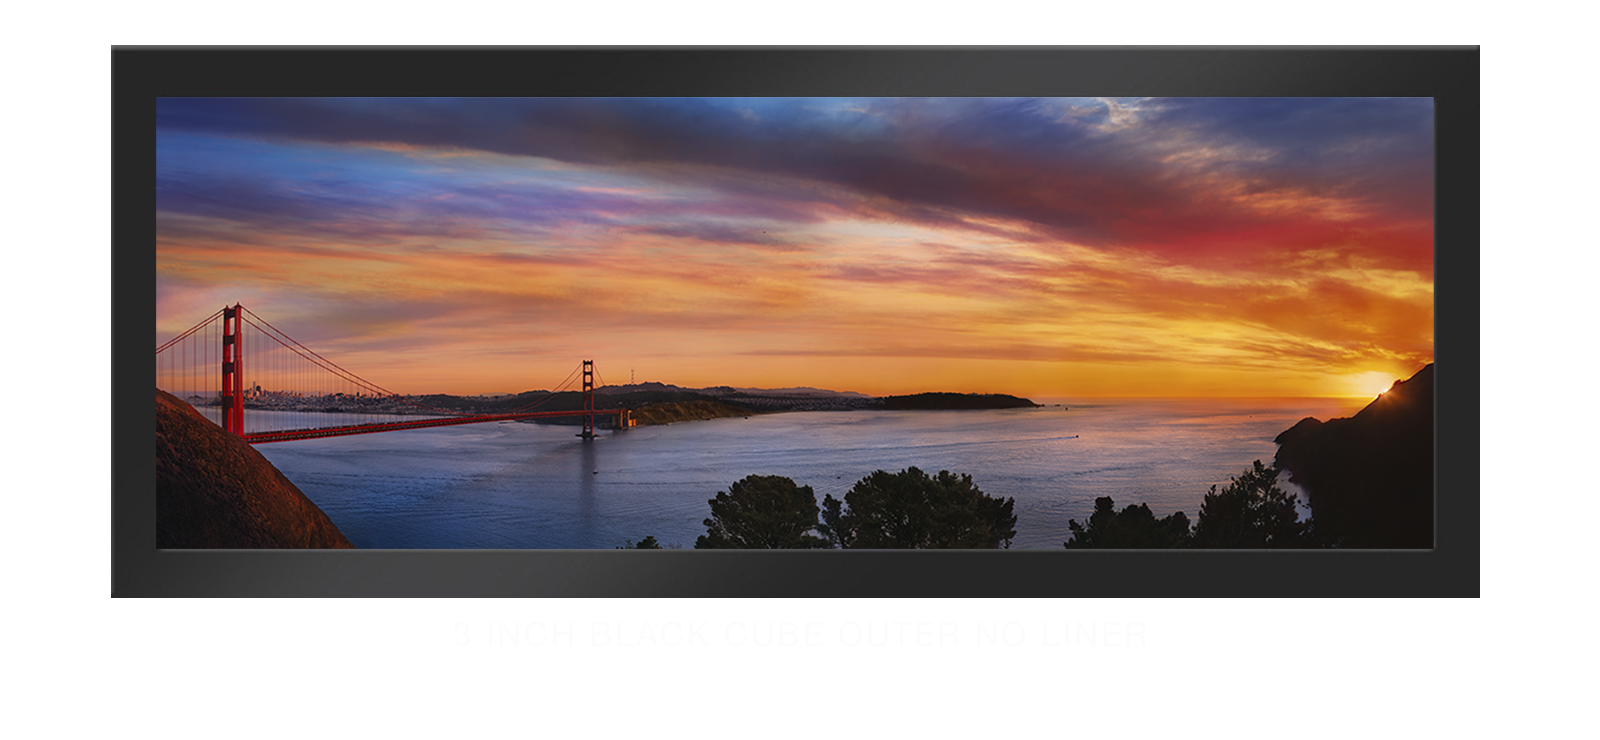 13GoldenGateBridge 3 Inch Black Cube Outer w_No Liner T